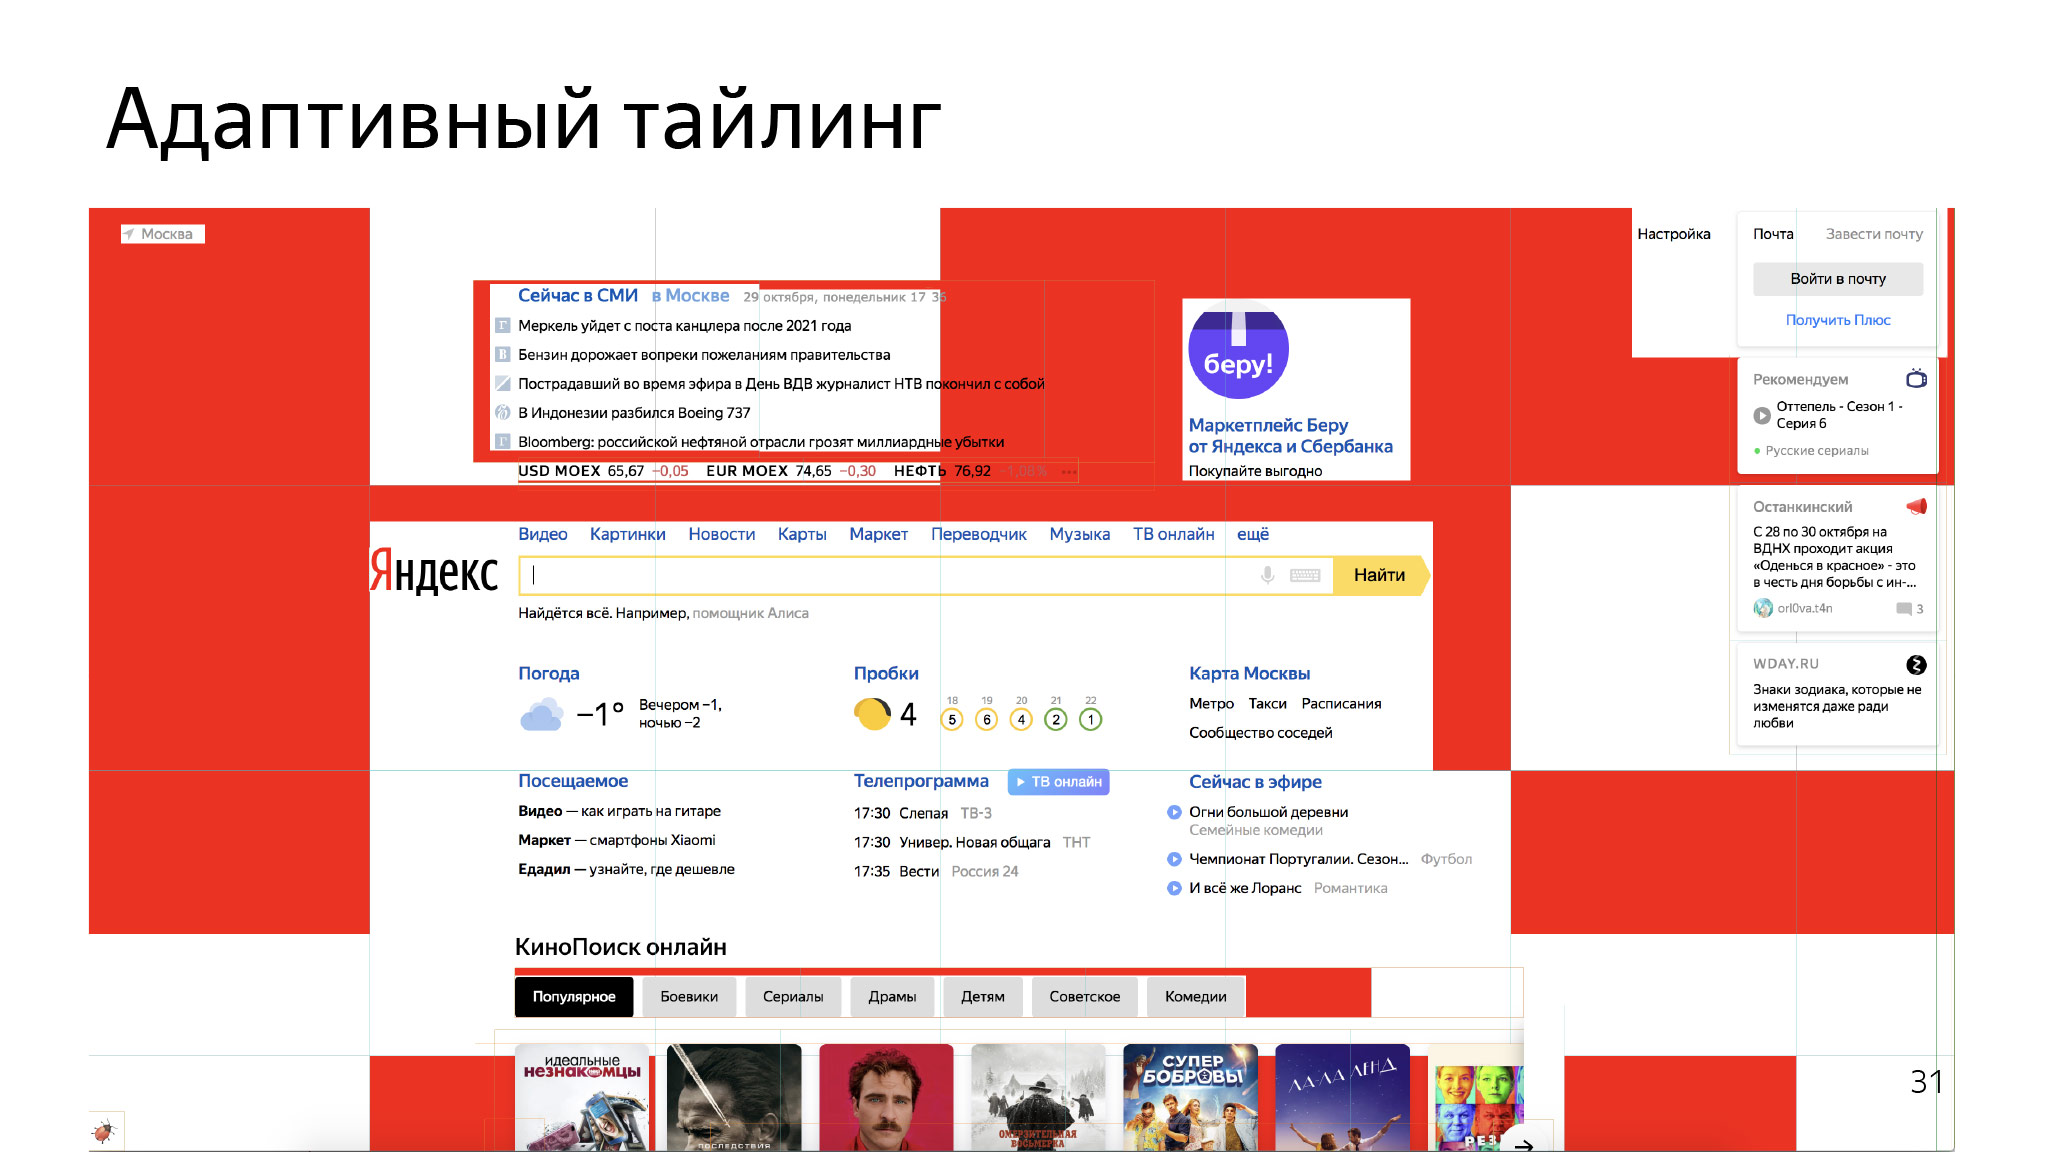 Как сэкономить ресурсы в браузере и не сломать веб. Доклад Яндекса - 18